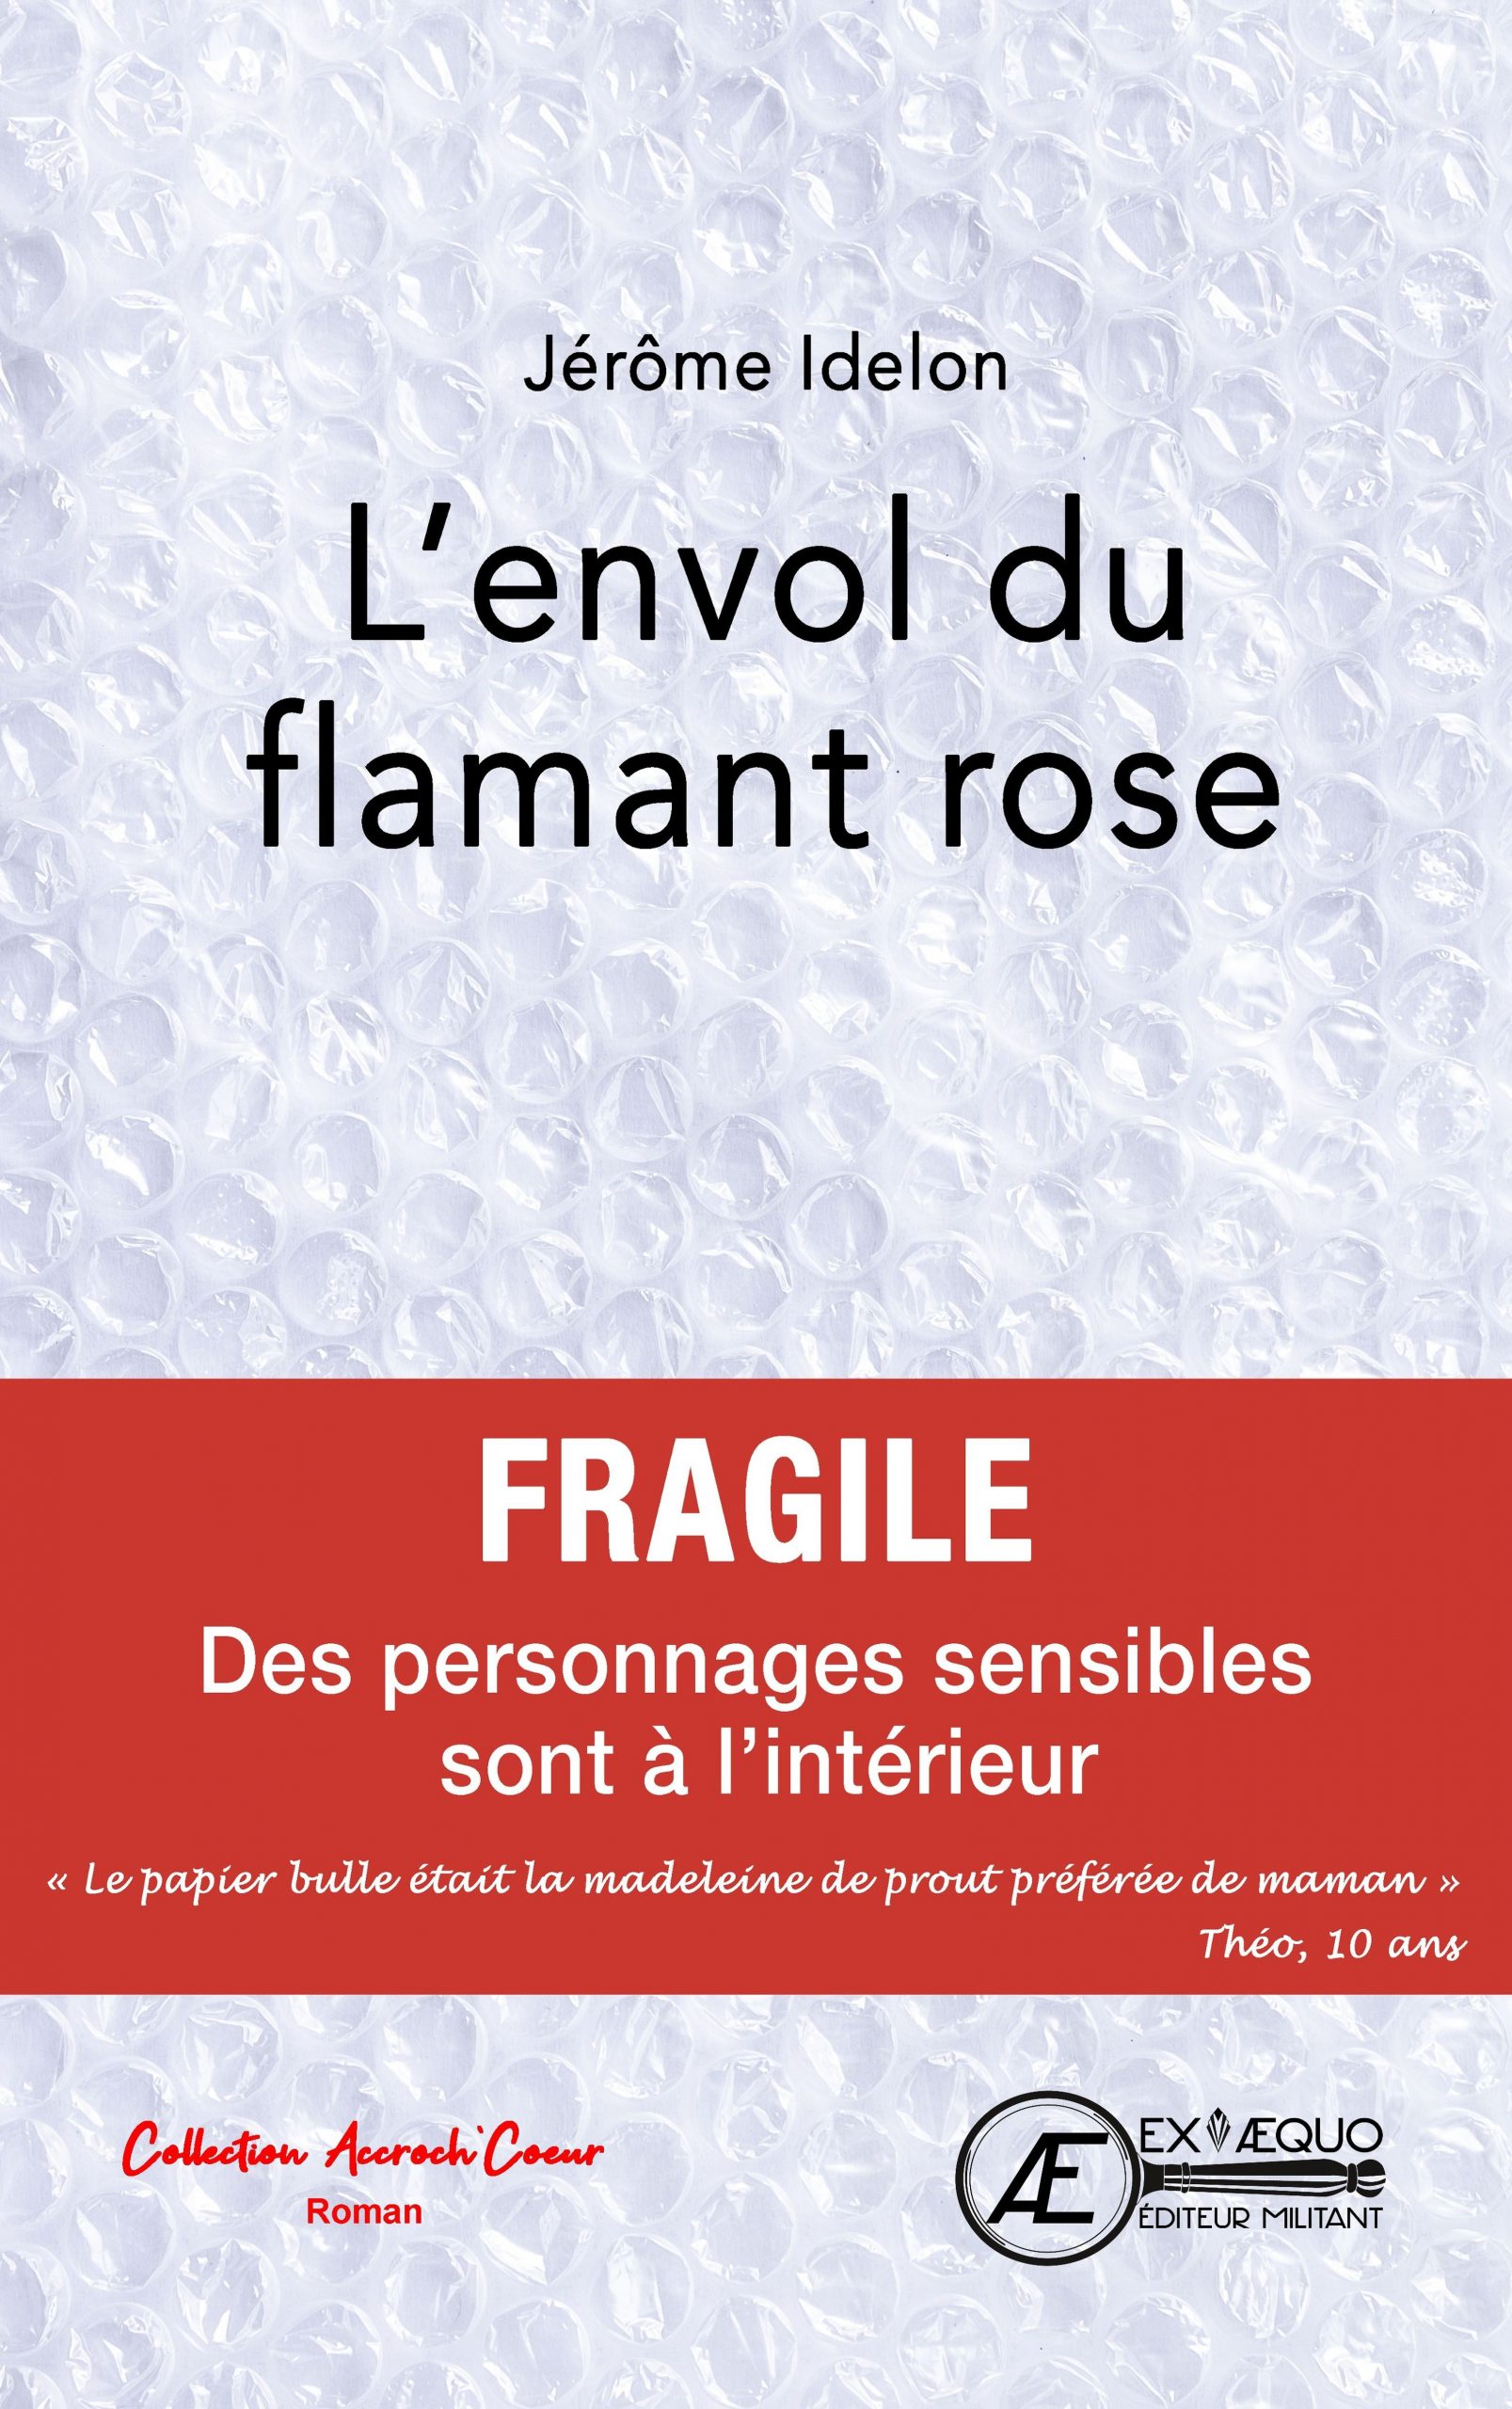 You are currently viewing L’envol du Flamant Rose, de Jérôme Idelon